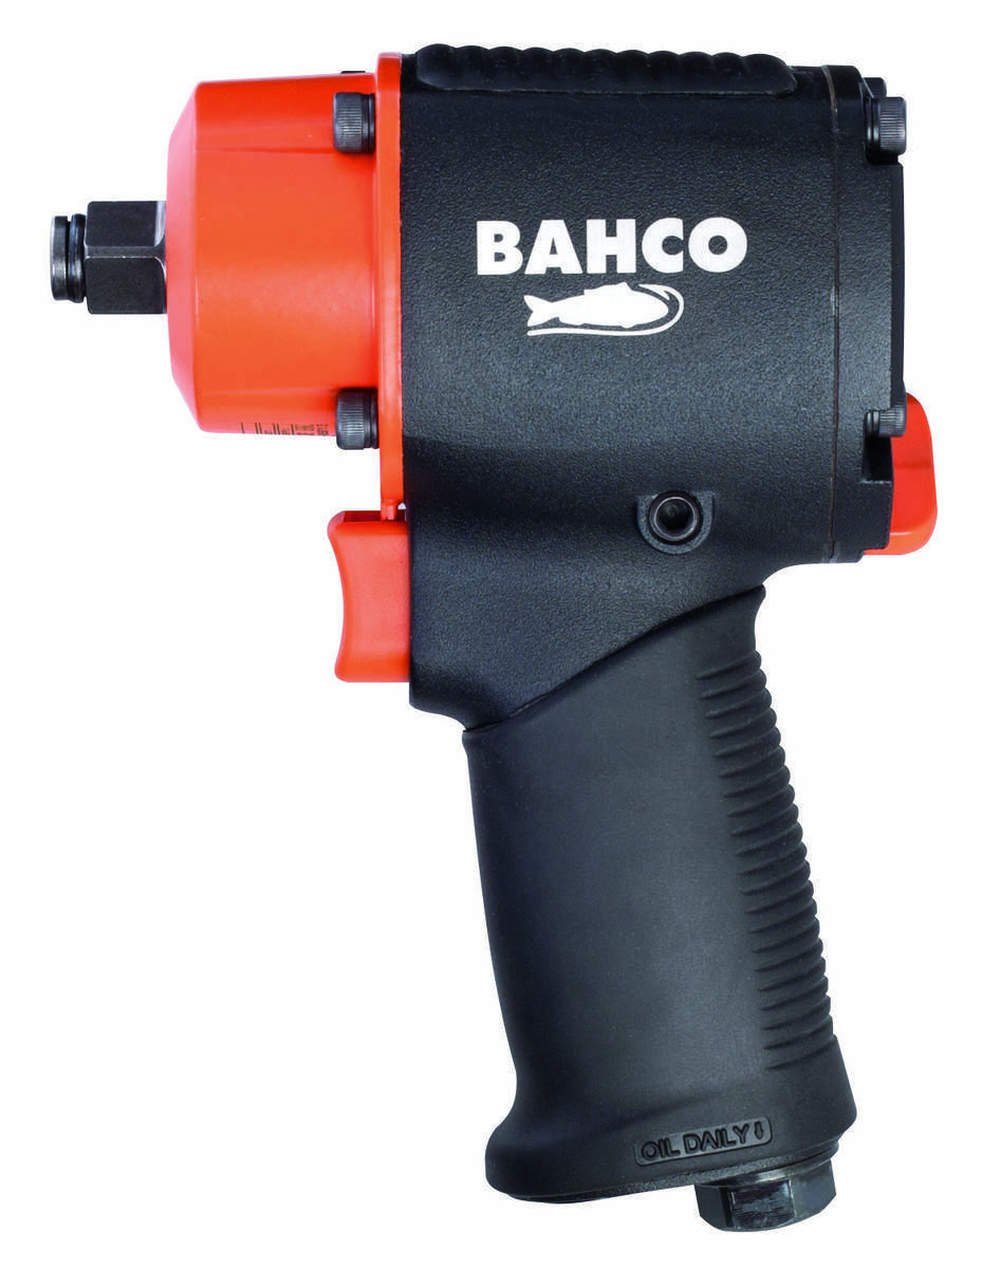 BAHCO Druckluft-Schlagschrauber BPC813, 10000 (Solo), Rutschfester Gummigriff U/min, Nm, Doppelhammer-Schlagwerk, 678